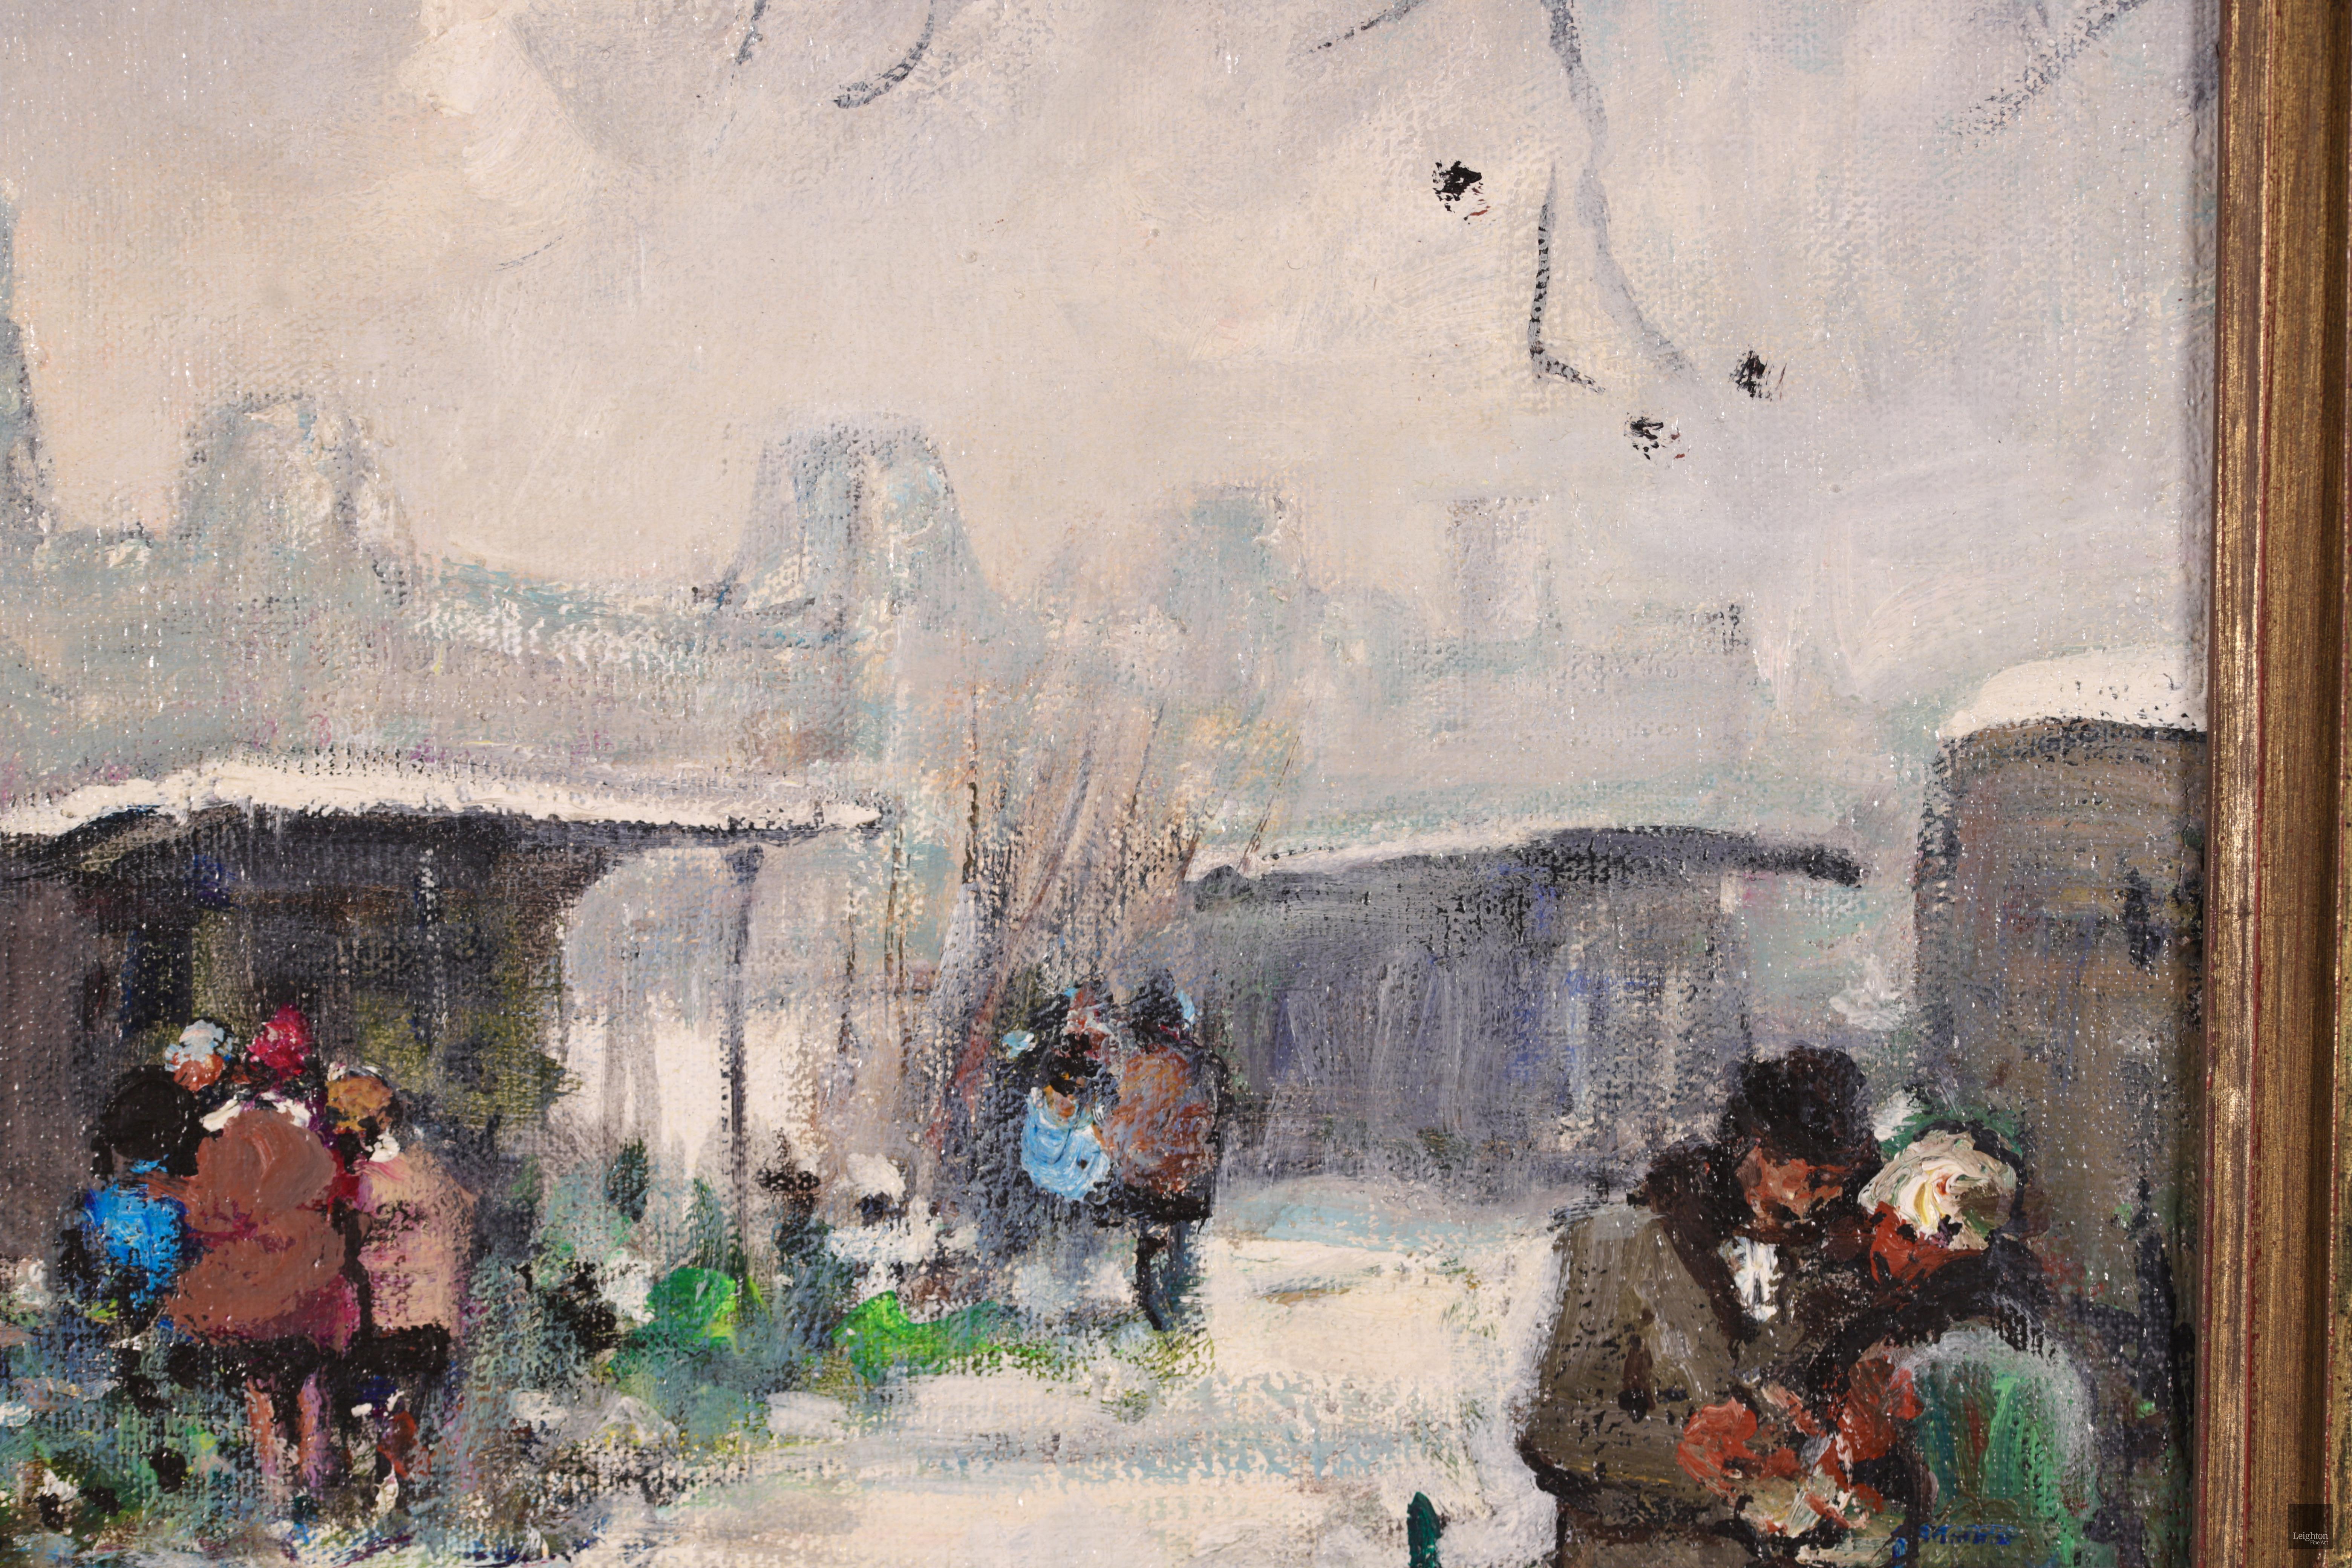 Signiertes impressionistisches figuratives Landschaftsöl auf Leinwand um 1950 von dem französischen Maler Jules Rene Herve. Die Winterlandschaft zeigt einen Weihnachtsbaummarkt, auf dem Kunden und Händler um ihre Holzhütten versammelt sind. Das